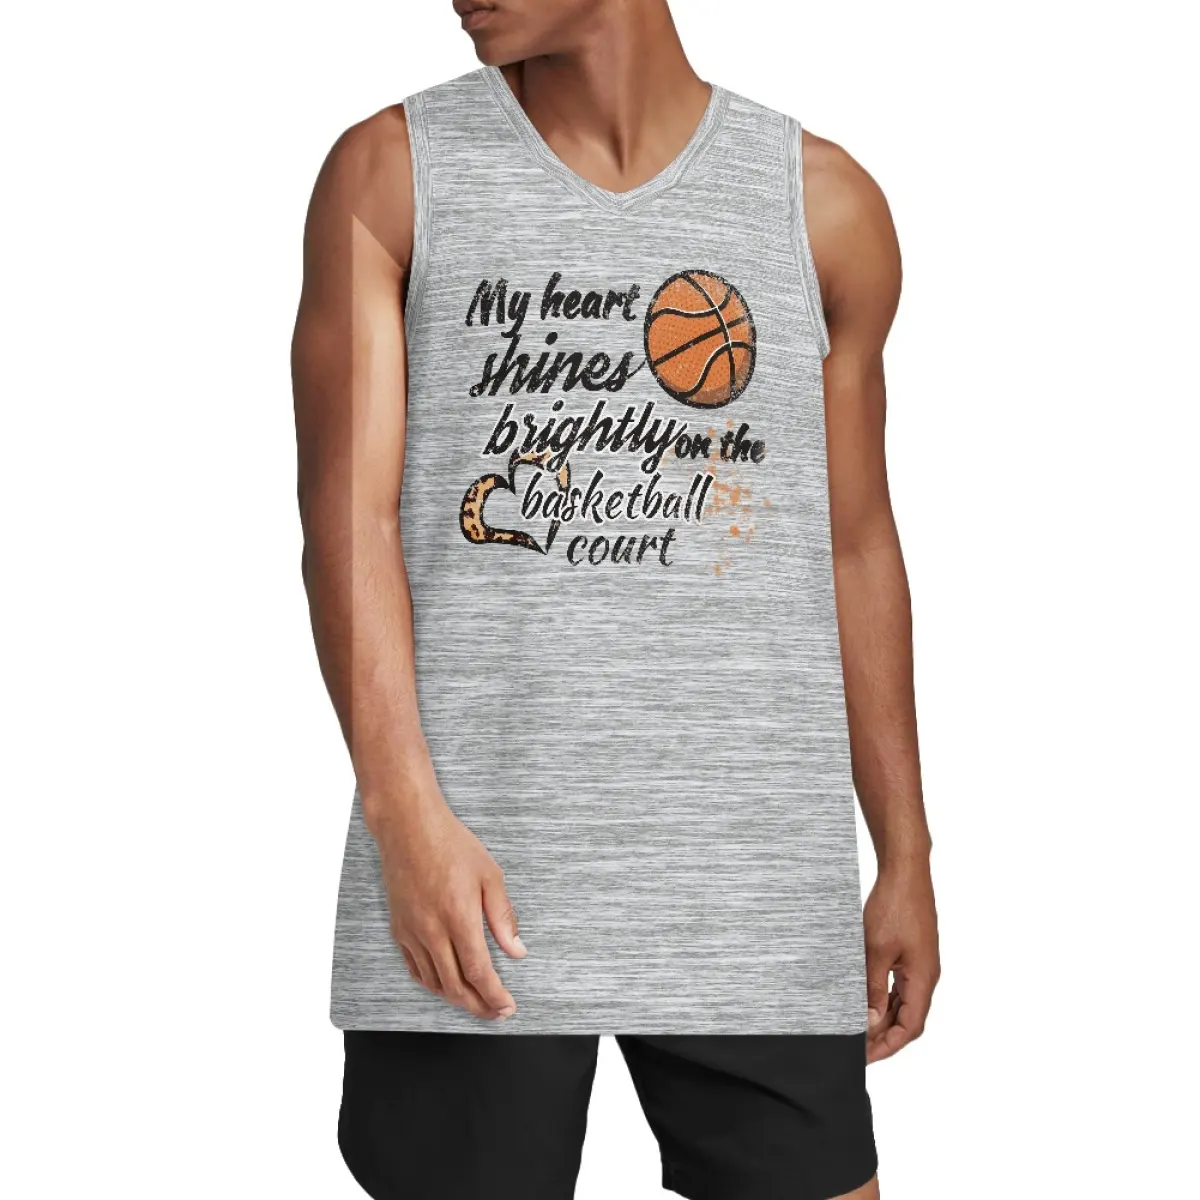 Özel toptan tasarım Retro süblimasyon geri dönüşümlü sepet topu çocuklar atlet yelekler kiti Set gömlek erkekler basketbol üniforması Jersey